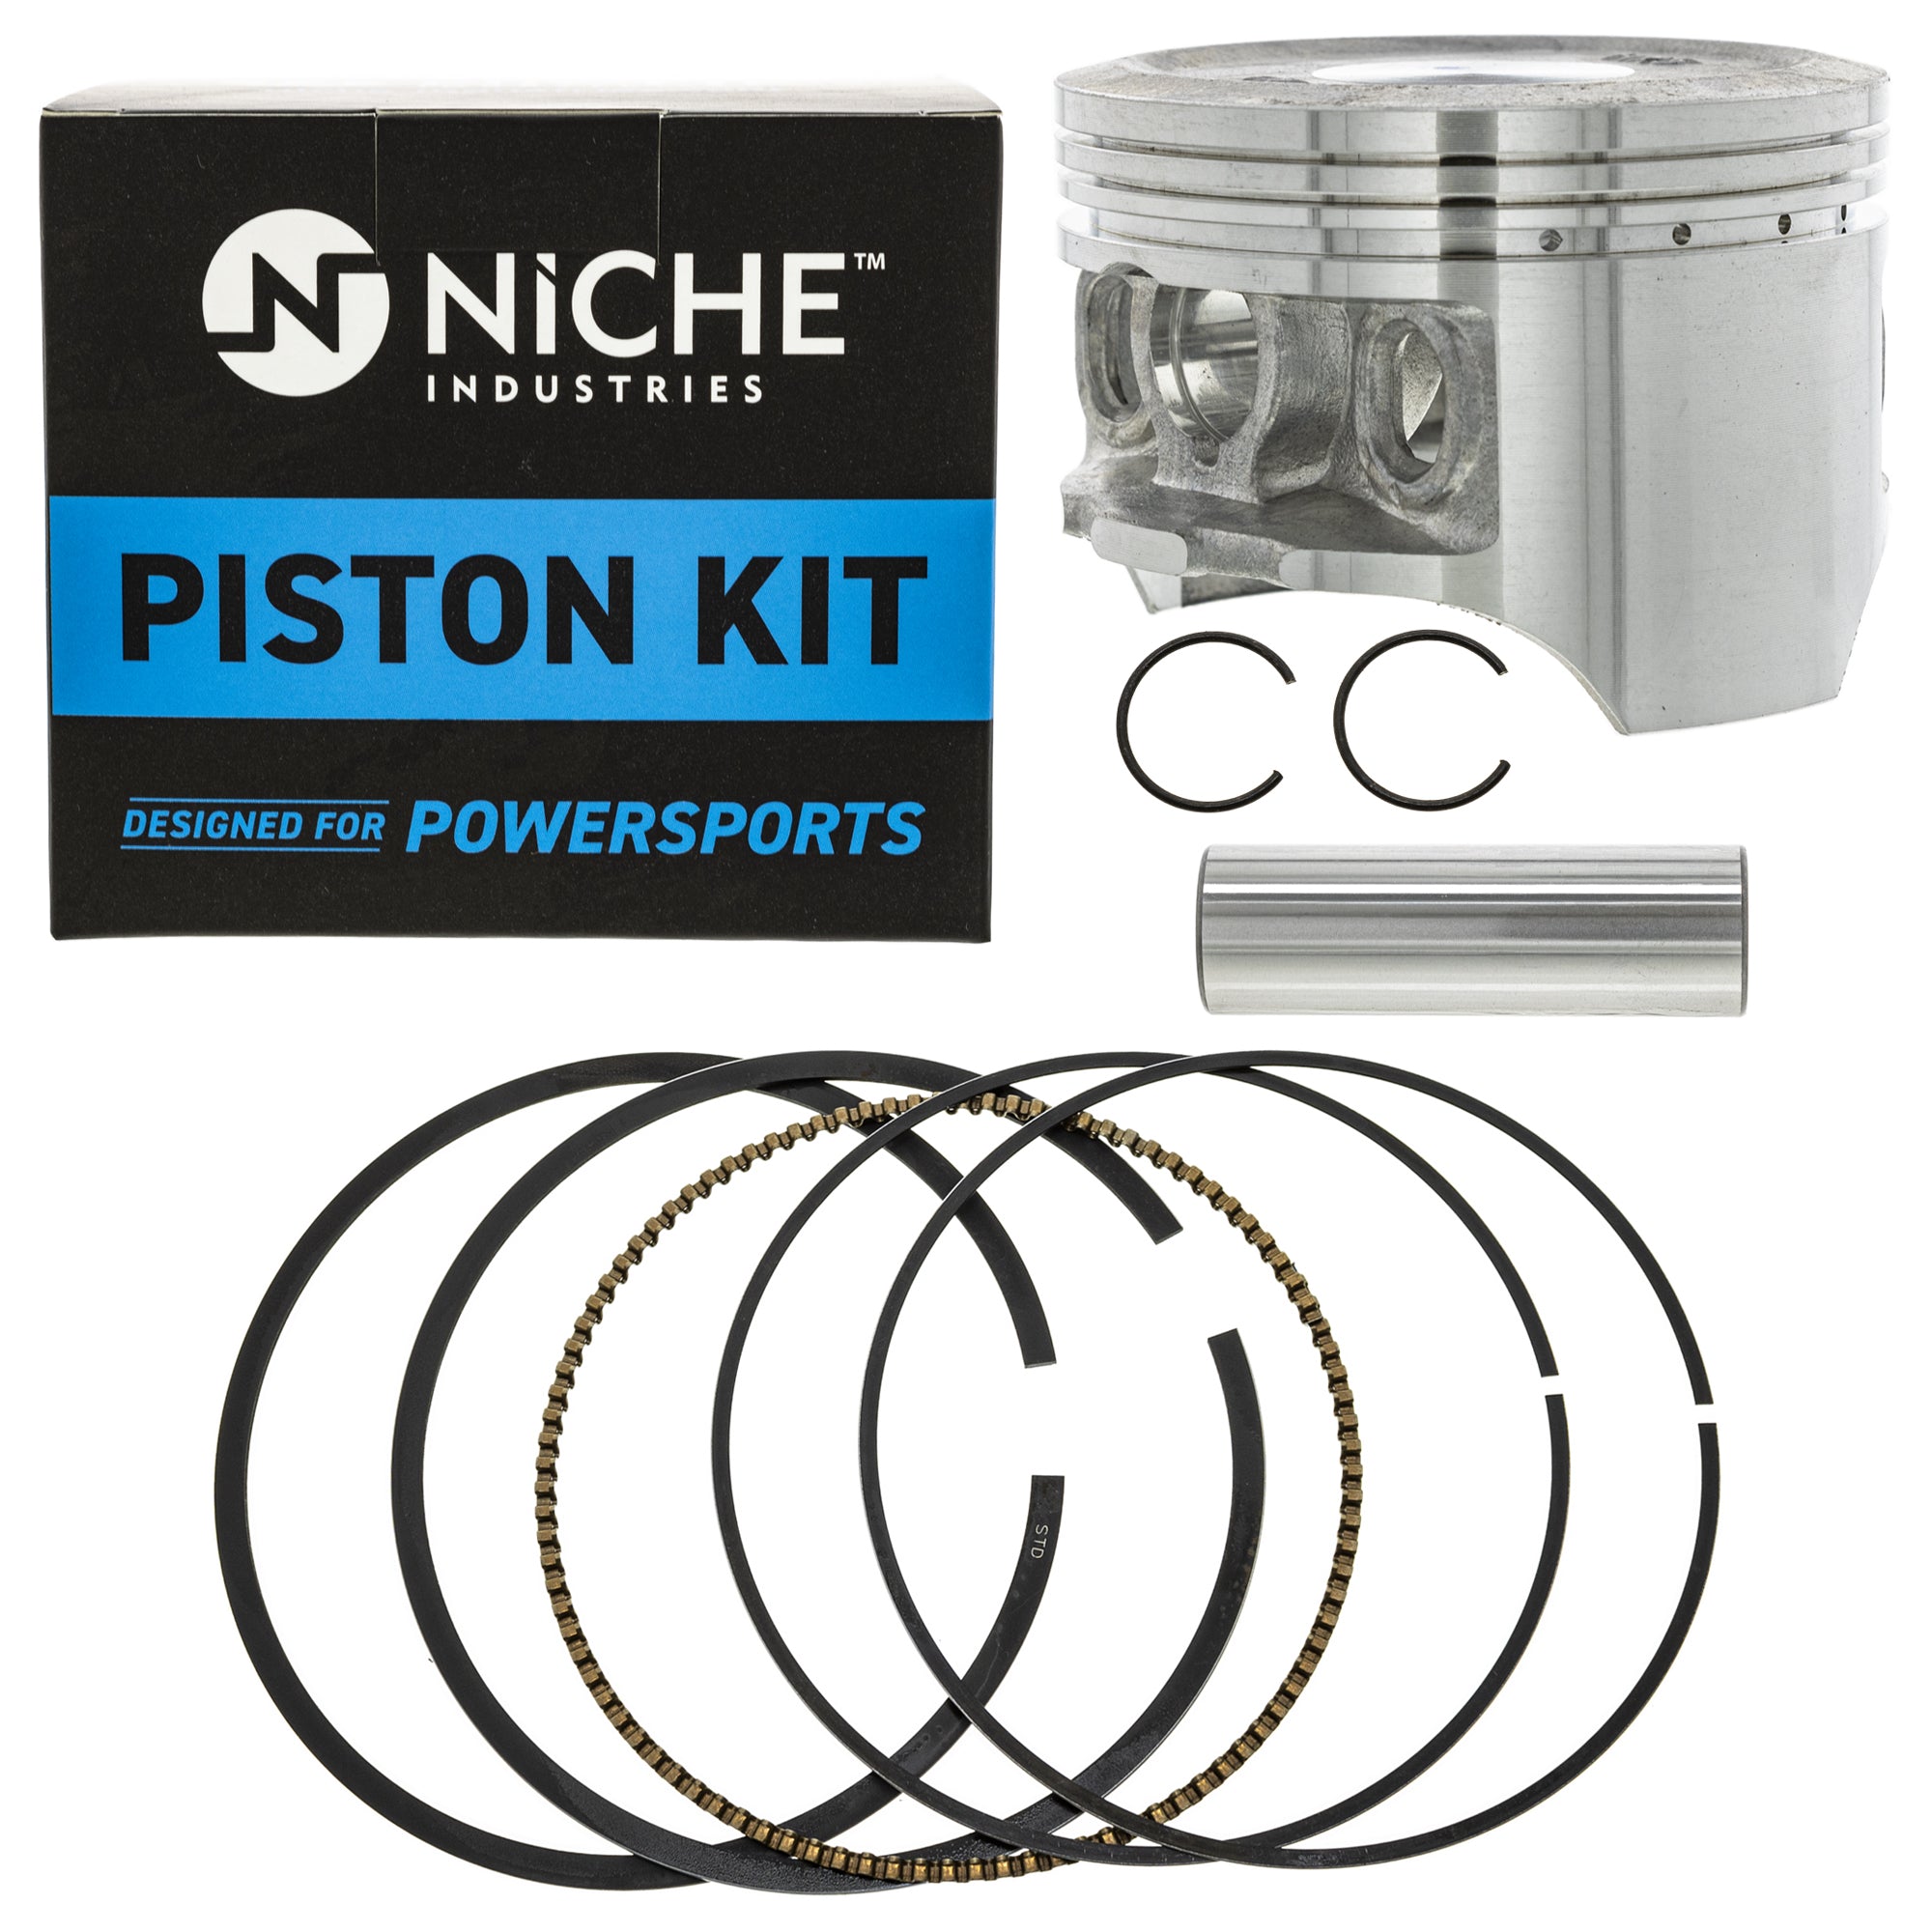 NICHE MK1000982 Piston Kit